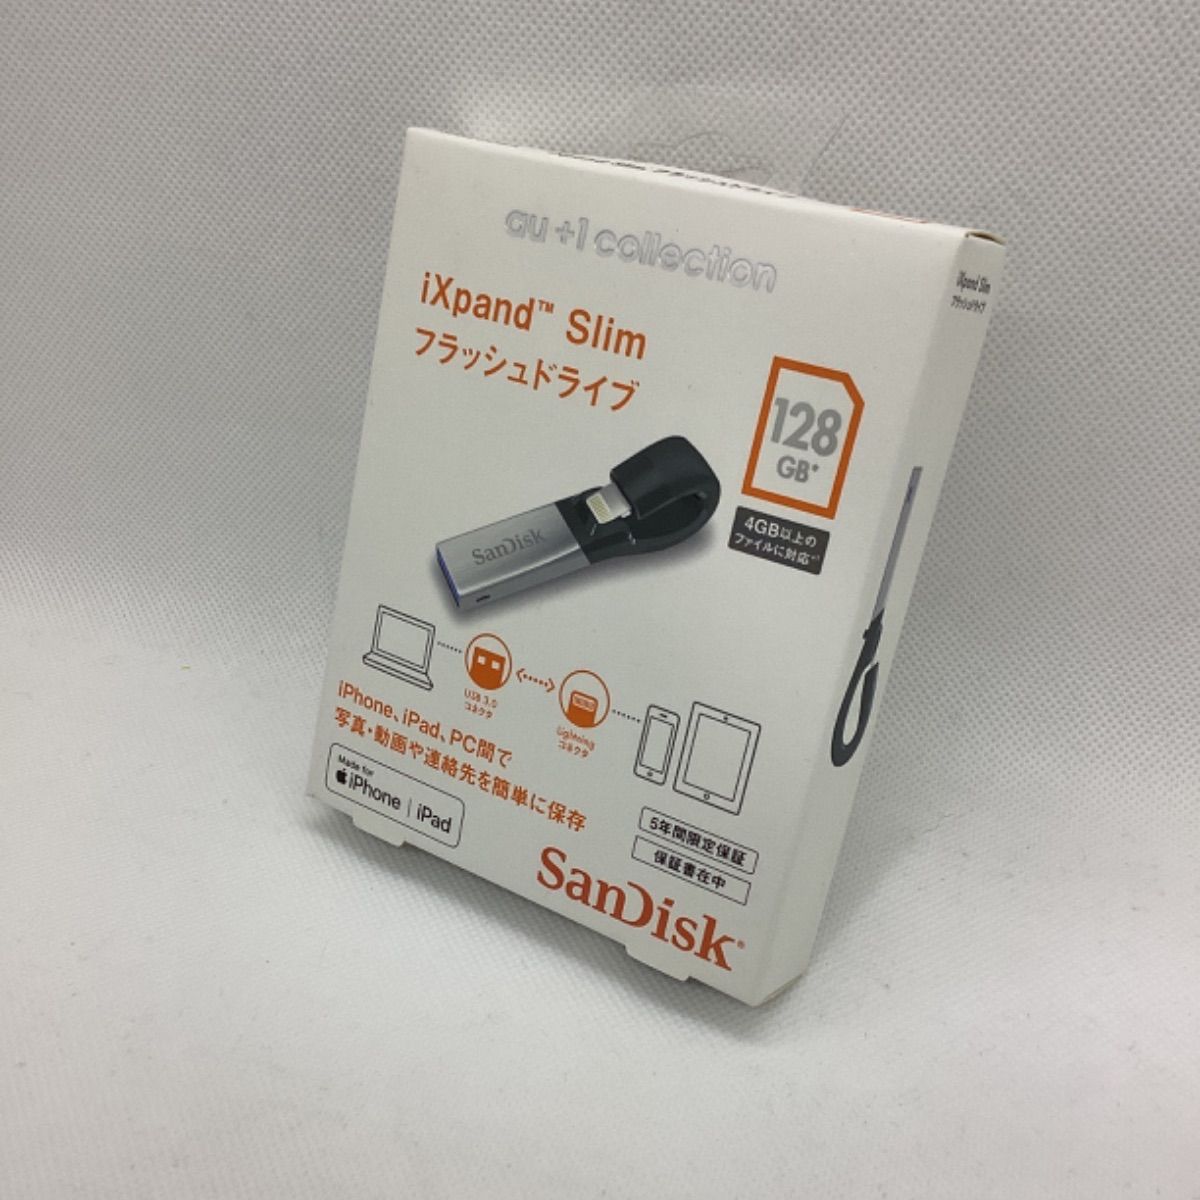 サンディスク iXpand Slim フラッシュドライブ 128GB